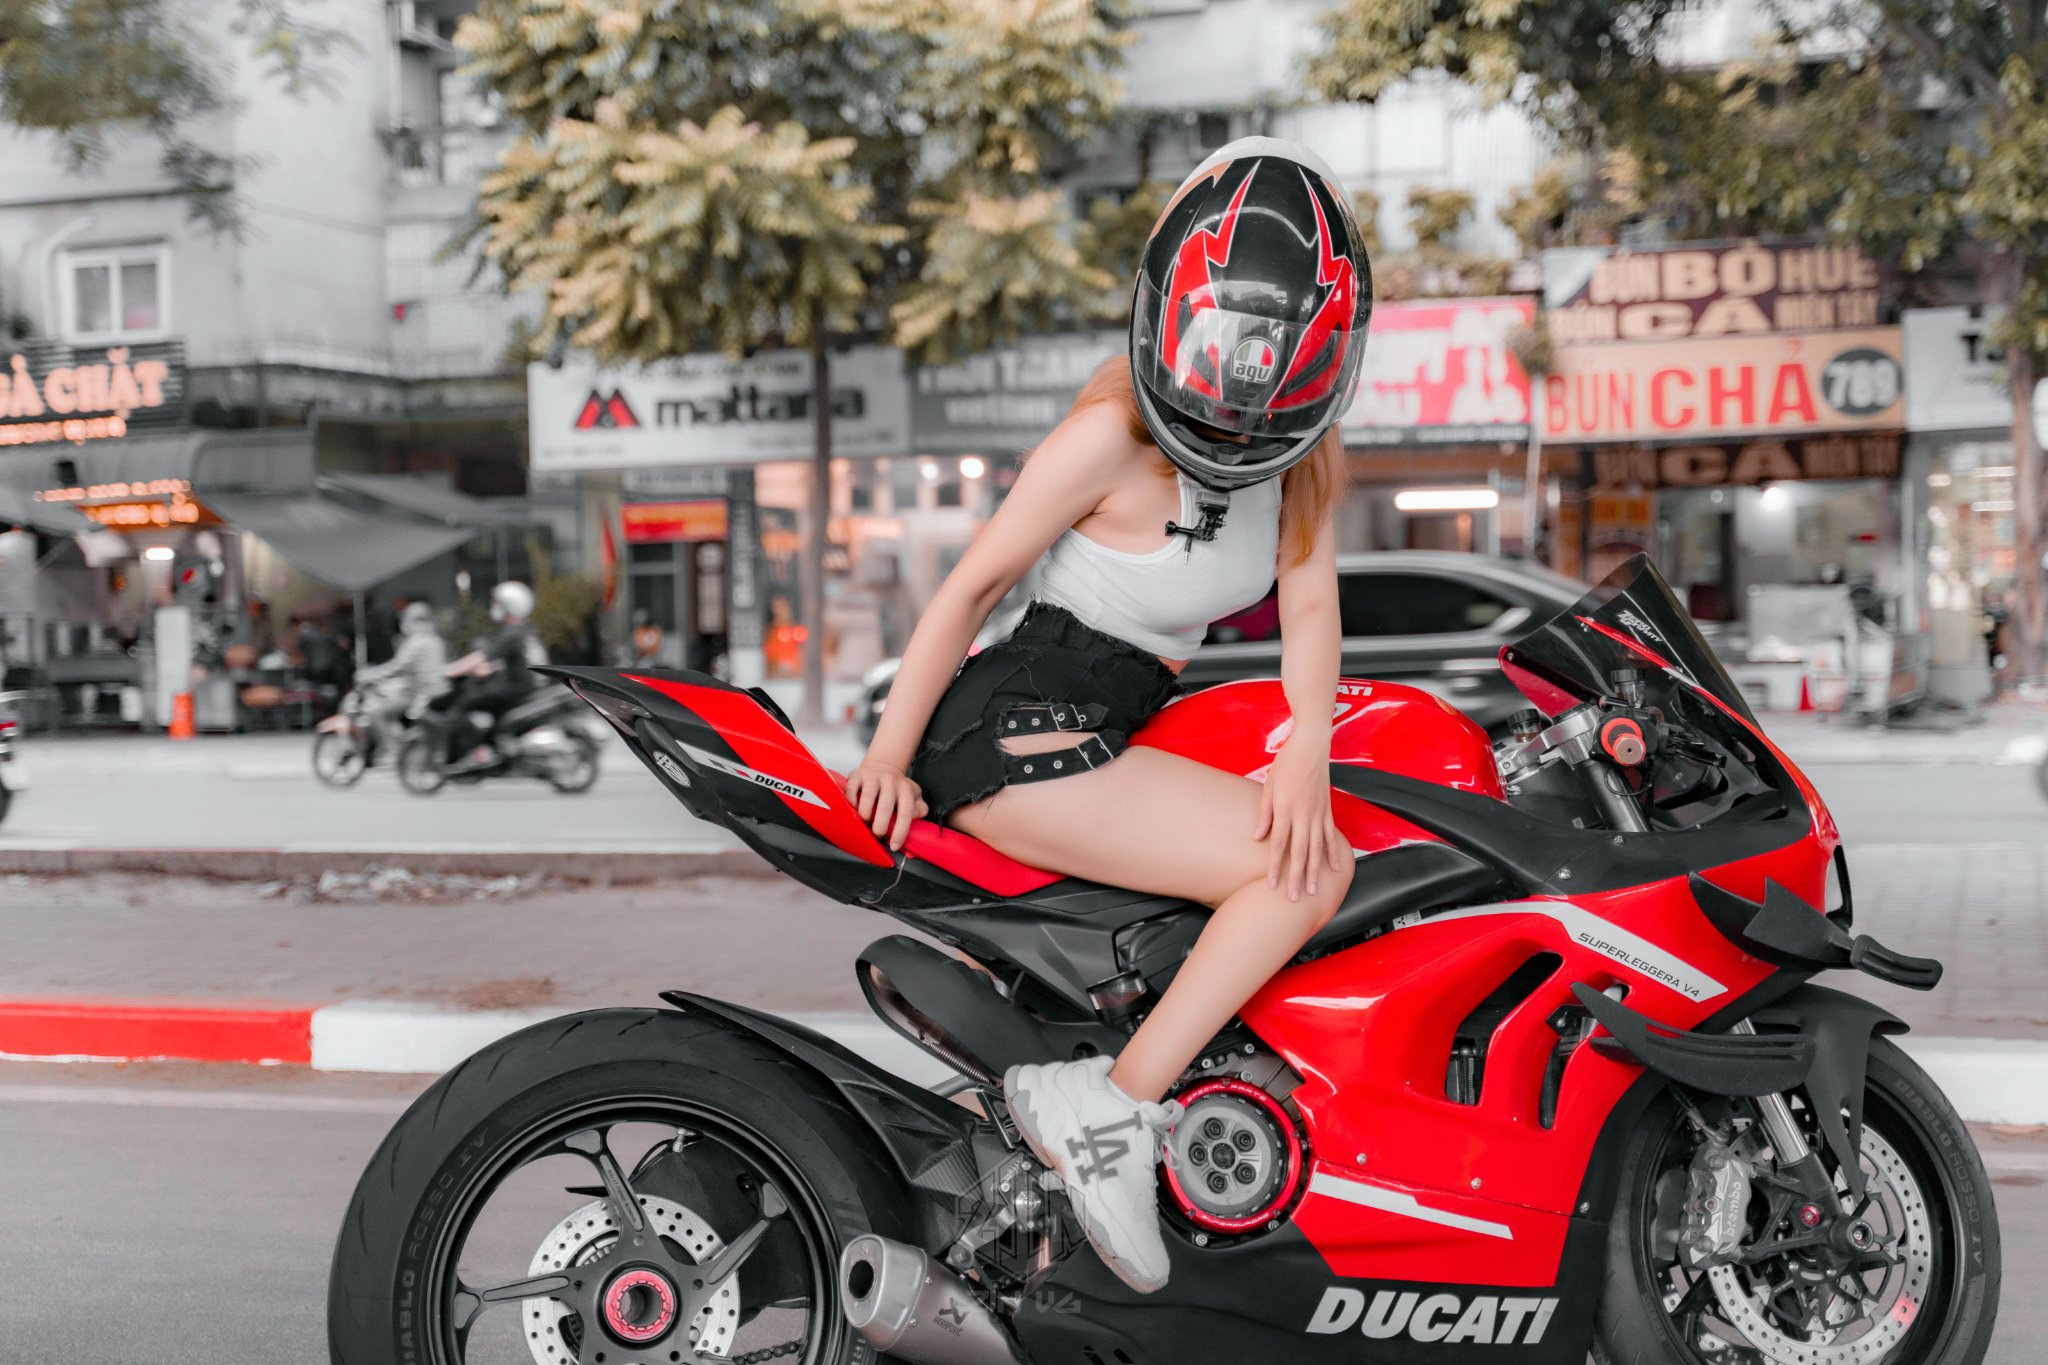 Nóng Mắt Bộ Ảnh Ducati 899 Độ Superleggera V4 Đọ Dáng Cùng Người Đẹp -  Motosaigon